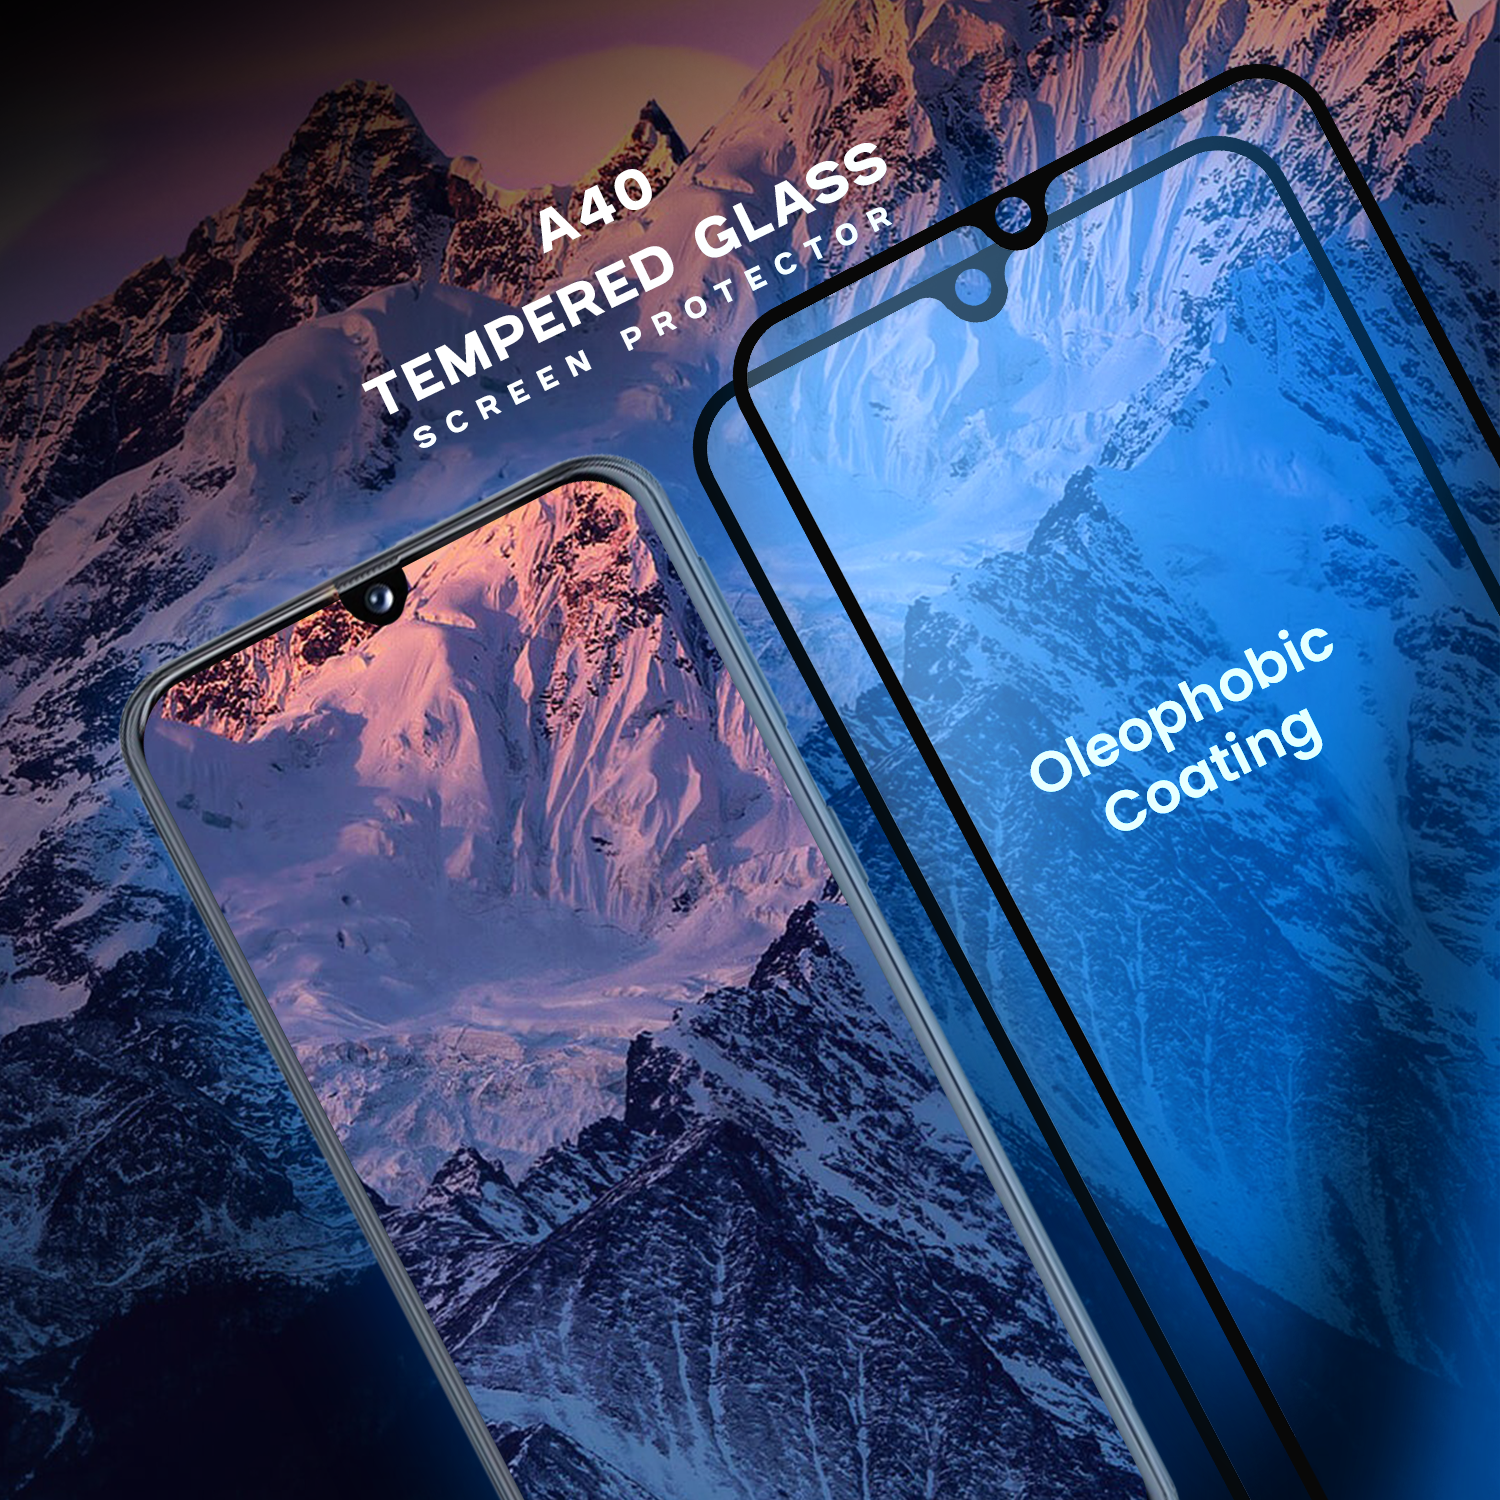 2-PACK Samsung Galaxy A40 - Härdat glas 9H - Super kvalitet 3D